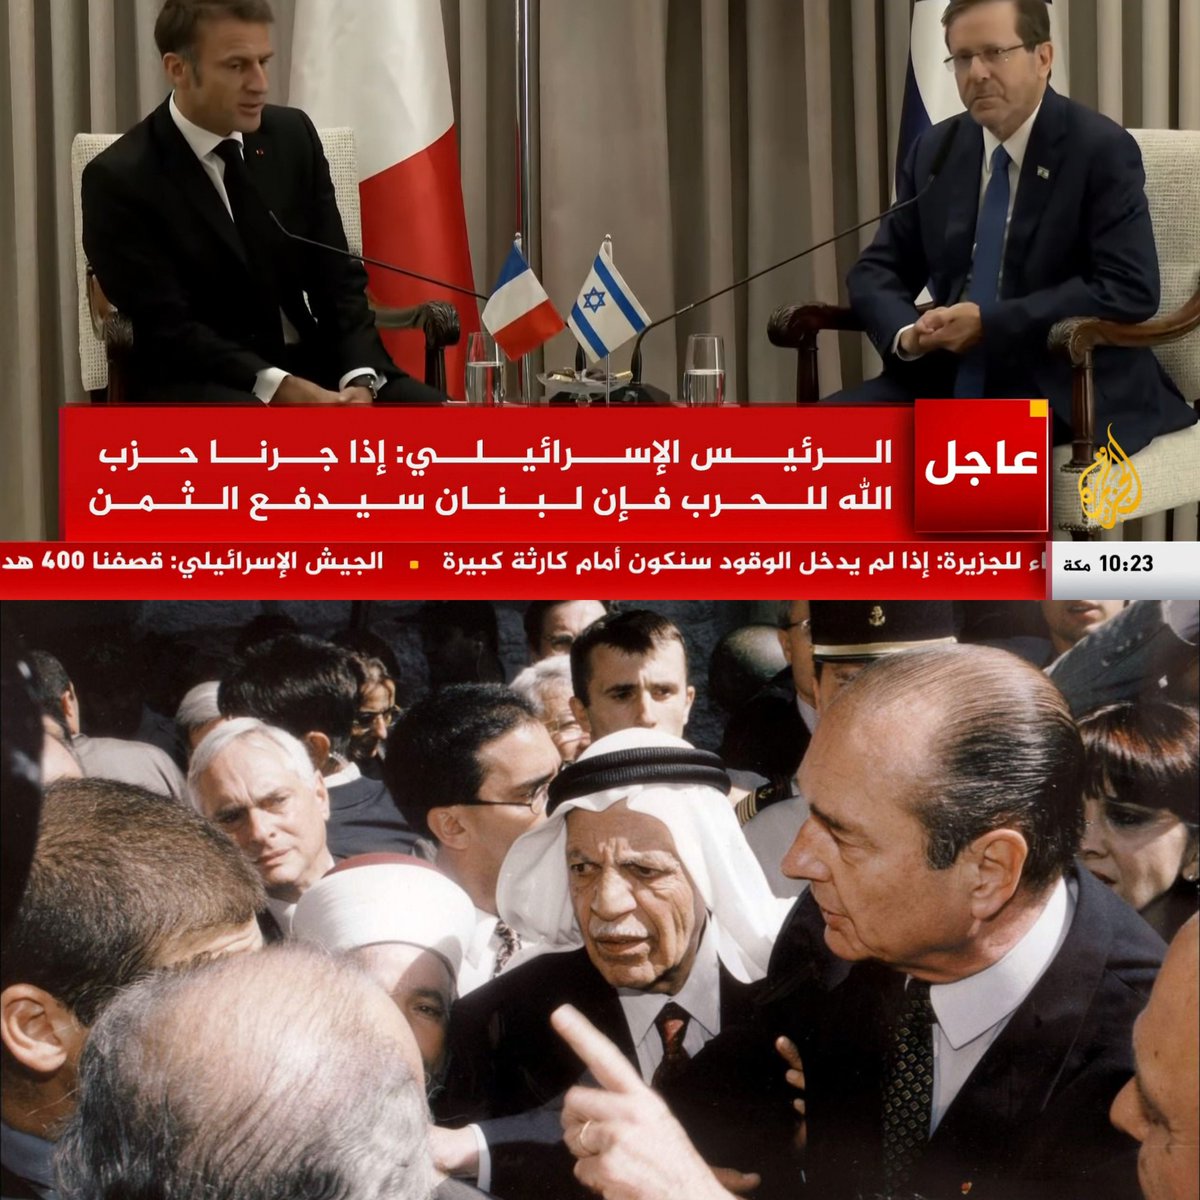 Comparé à Jacques #Chirac, voici l'image que donne @EmmanuelMacron sur la chaîne de télévision la plus regardée du monde arabe...

#PolitiqueÉtrangère #Politique #Macron #Gaza #Palestine